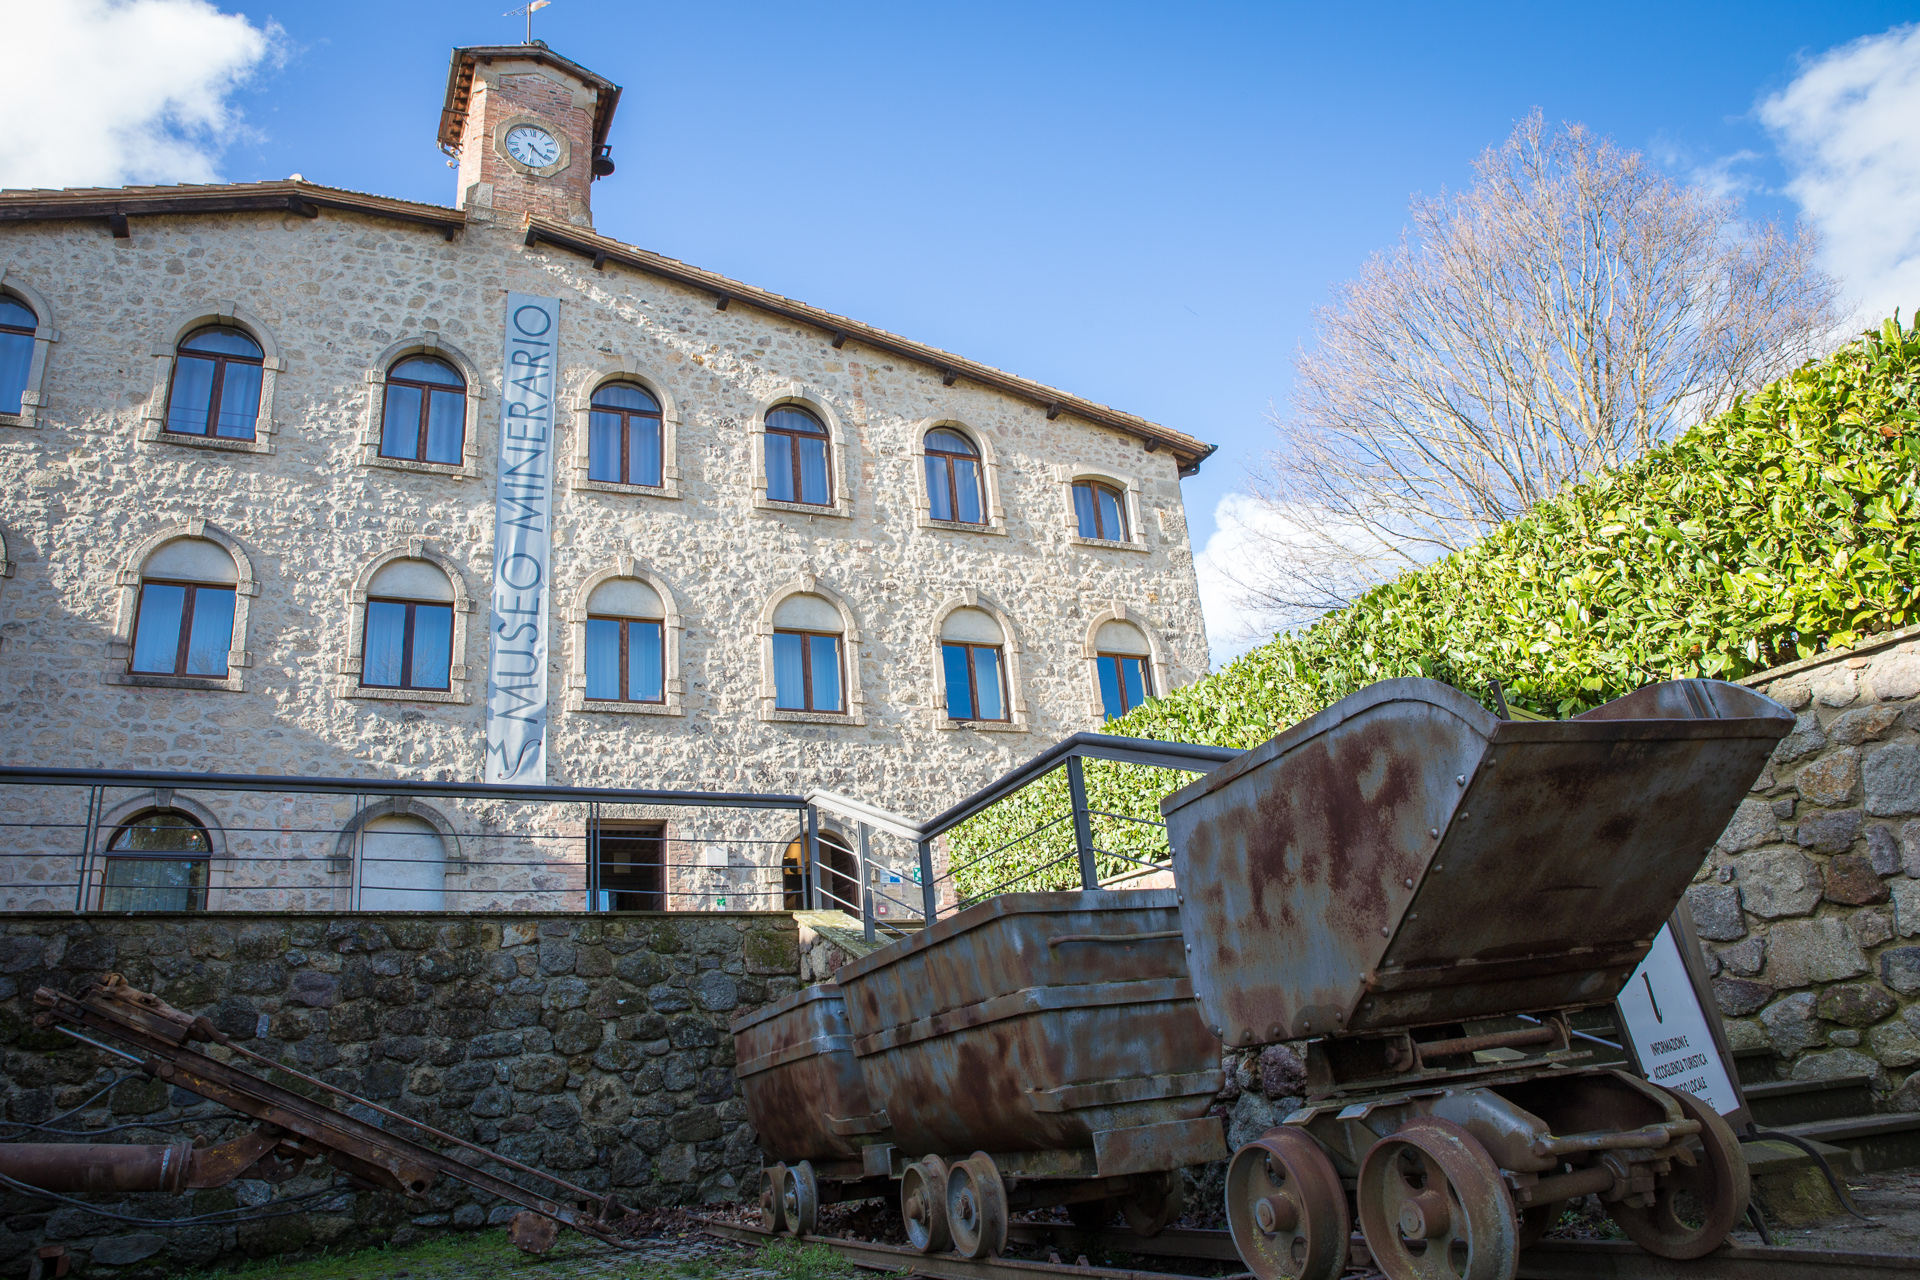 Mining Museum in Abbadia San Salvatore